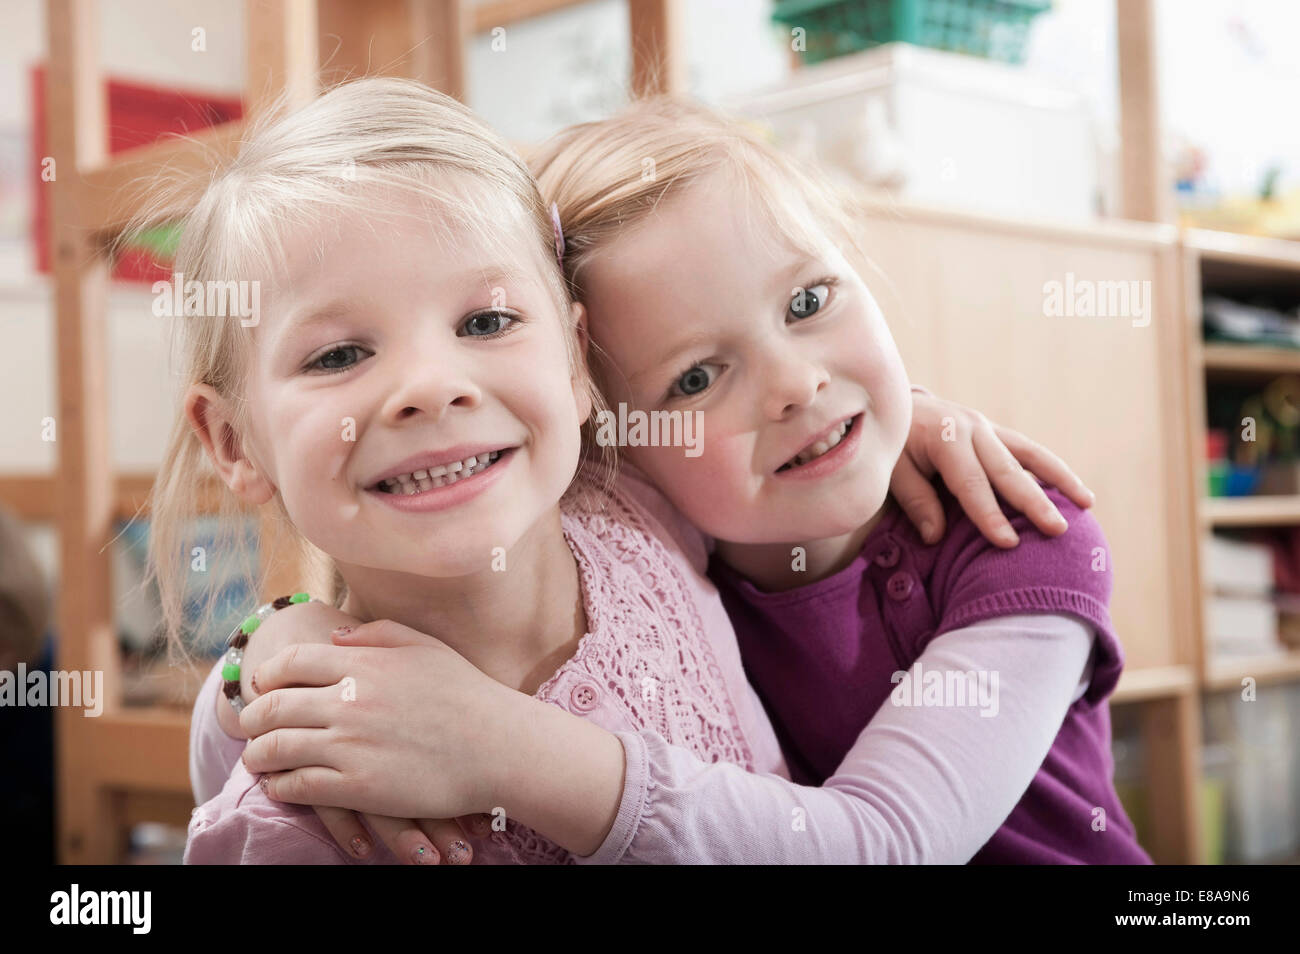 Portrait of two little girls, best friends, side by side in kindergarten Stock Photo